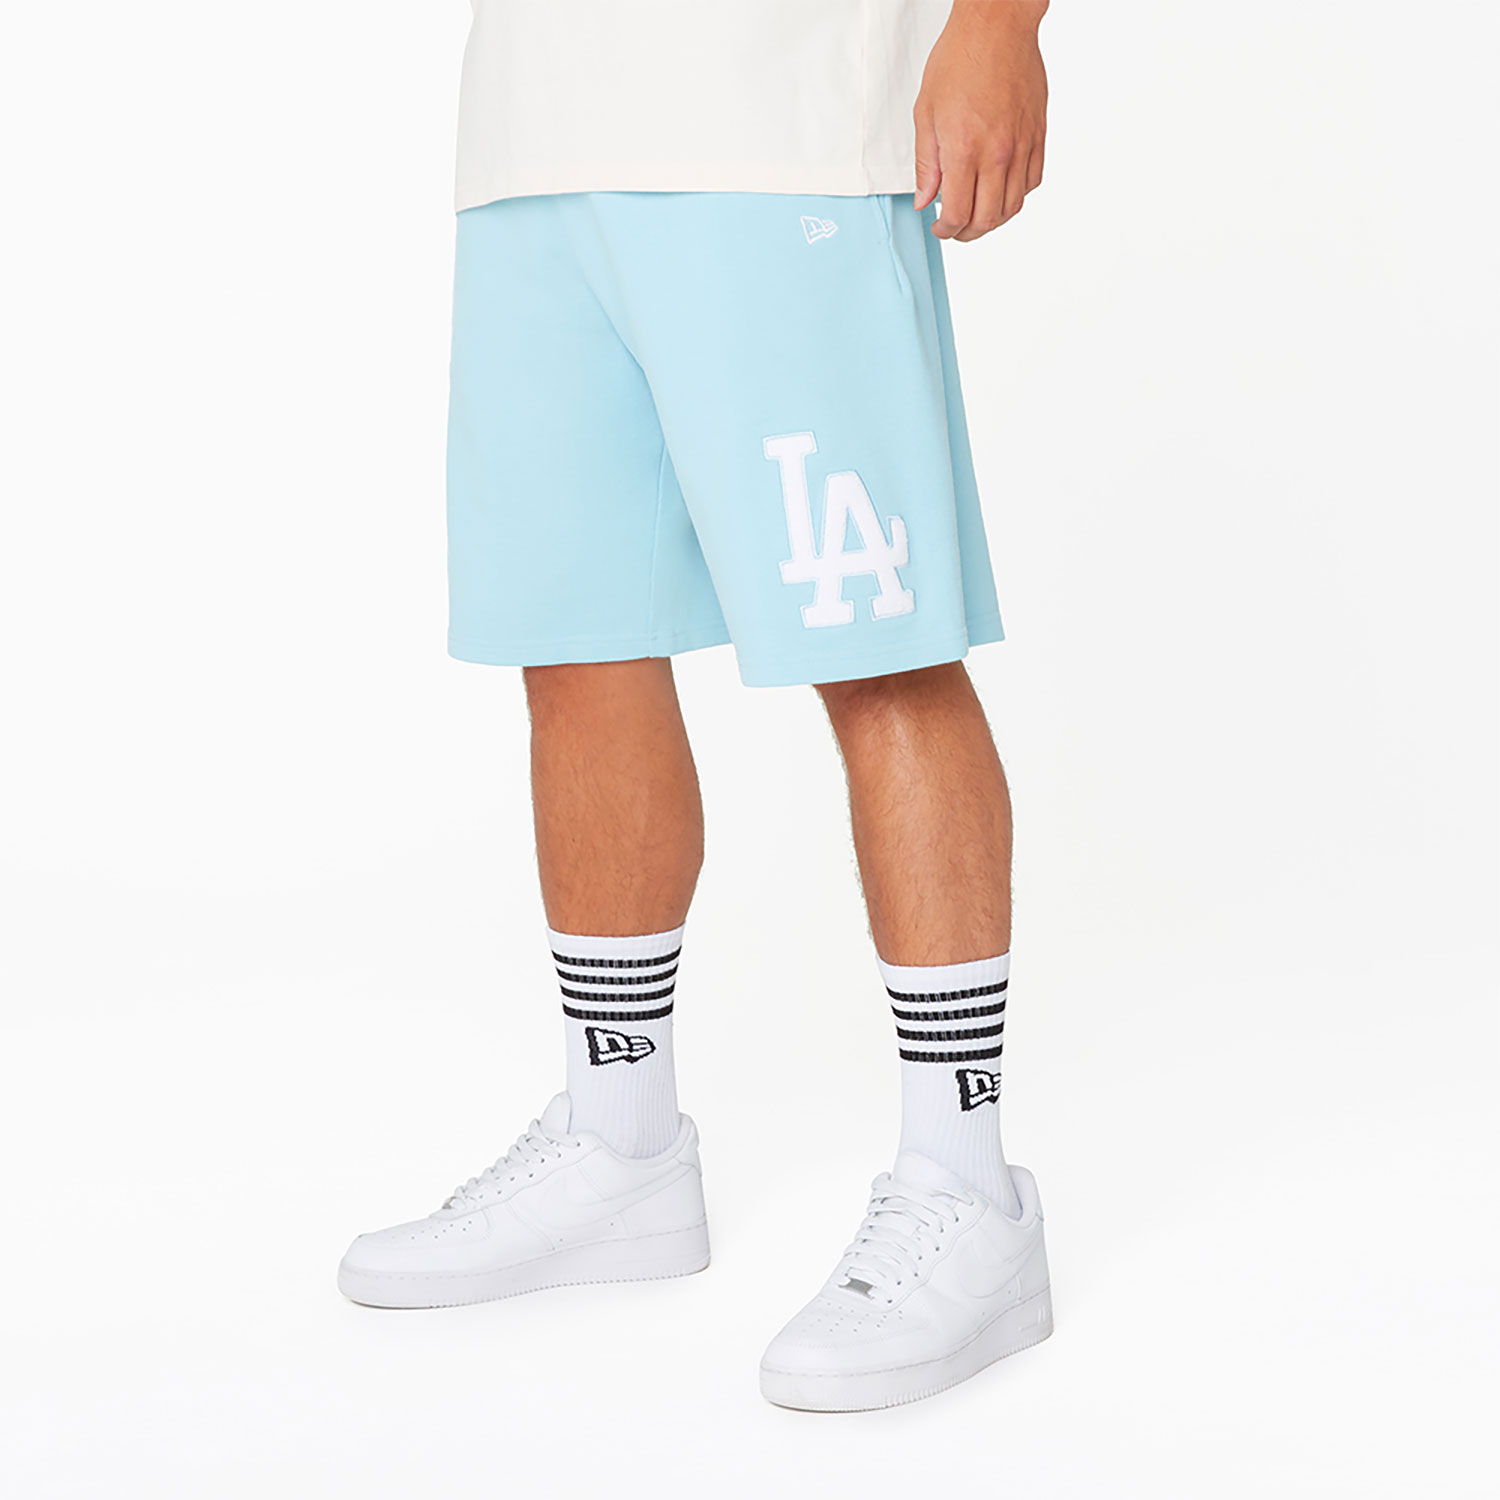 LA Dodgers X L.V. Shorts for Sale in Avondale, AZ - OfferUp